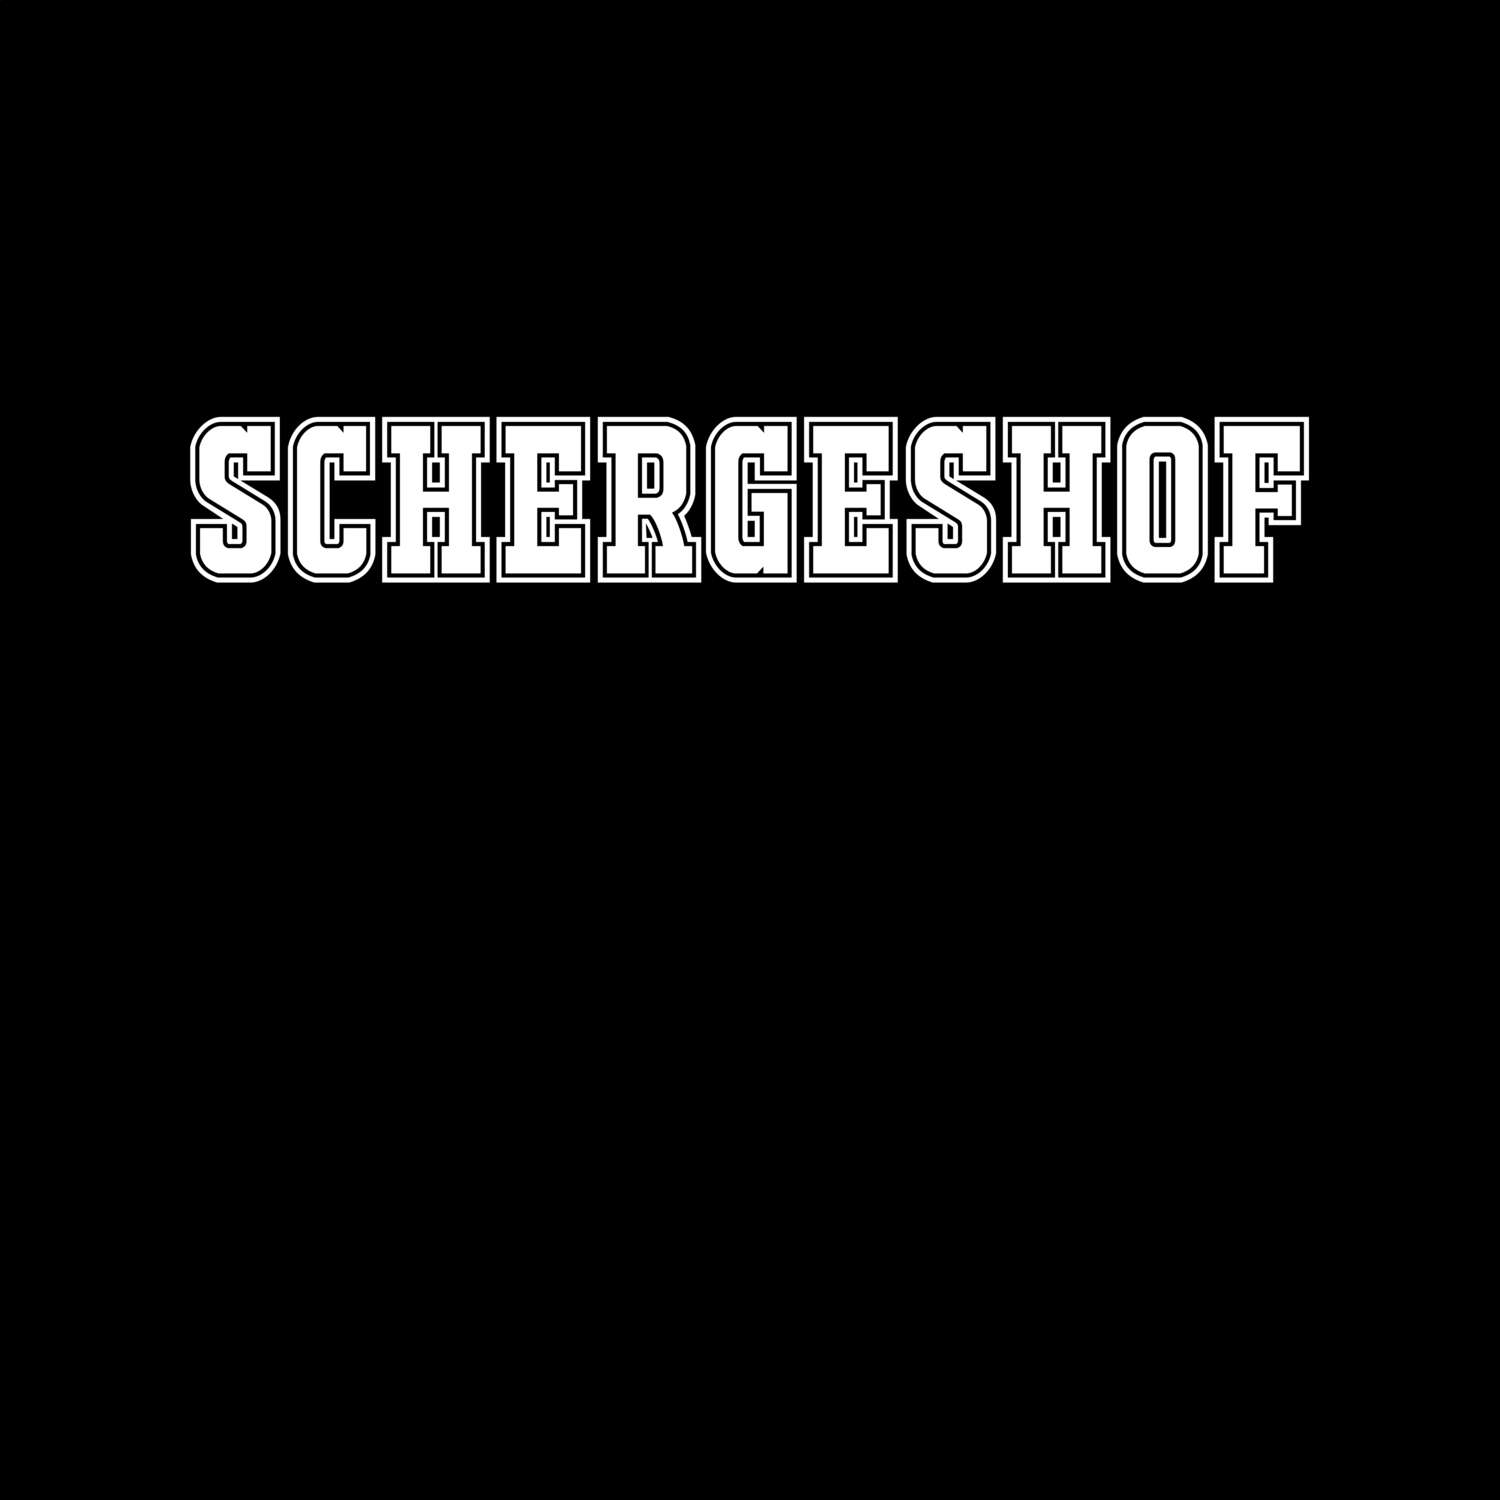 Schergeshof T-Shirt »Classic«